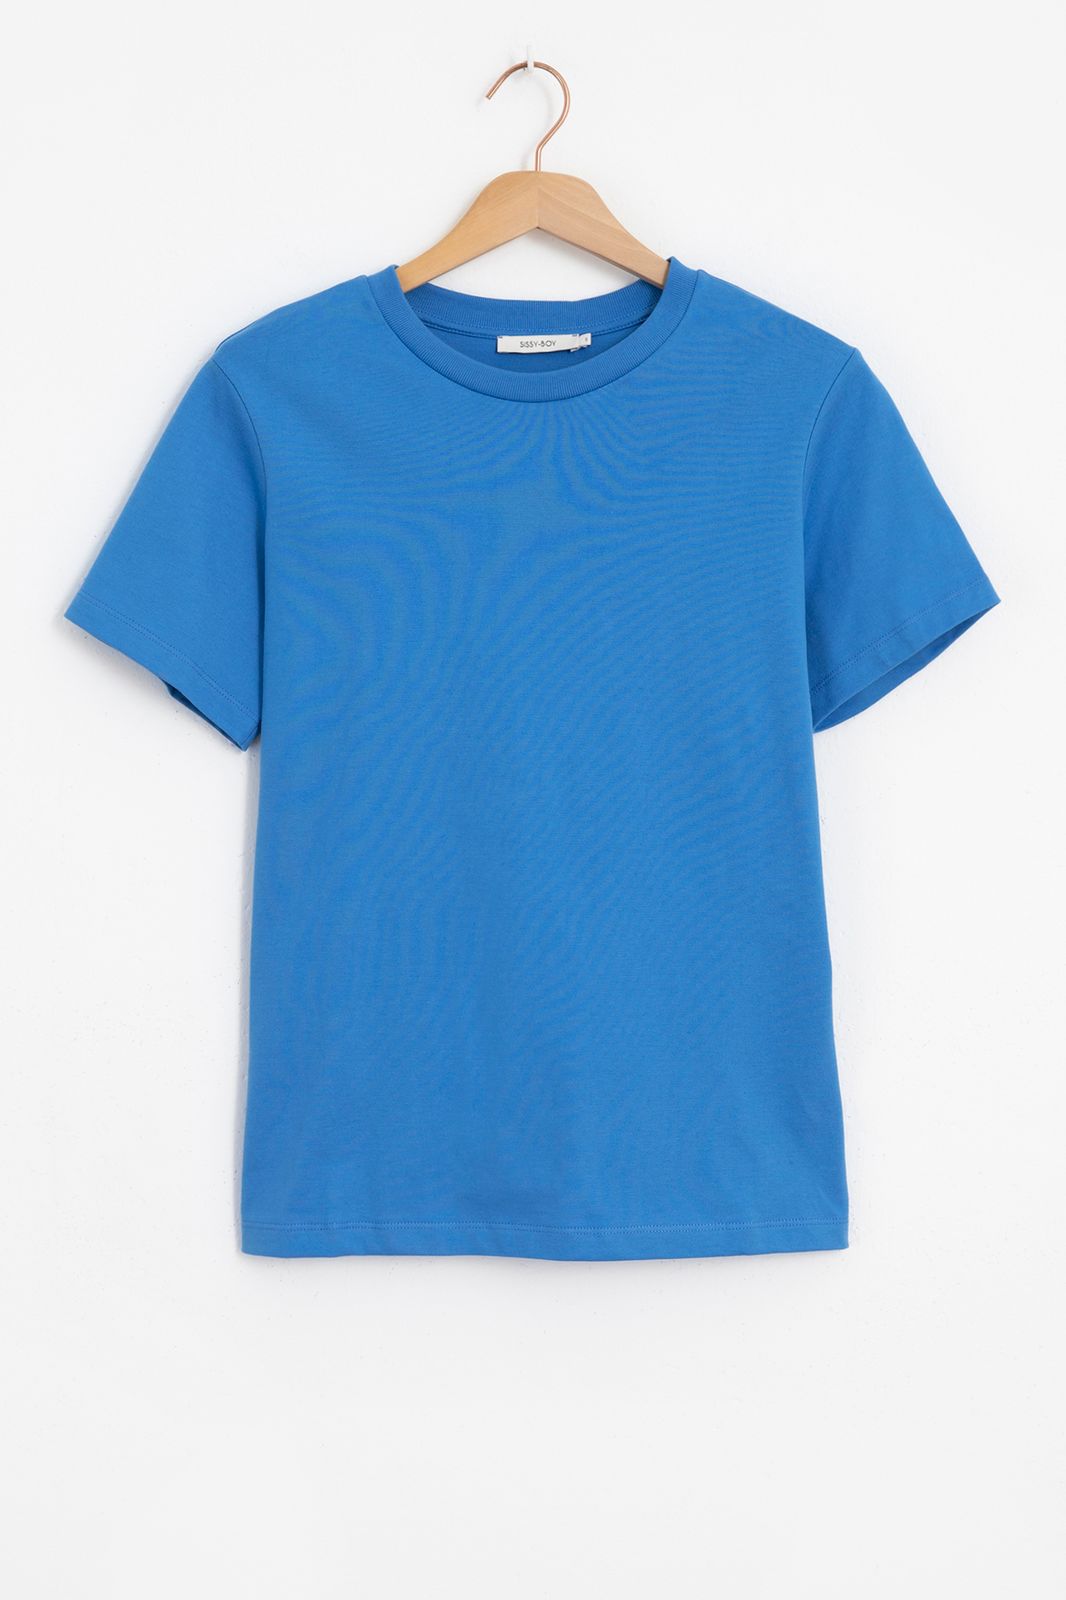 Baumwoll-Shirt - blau